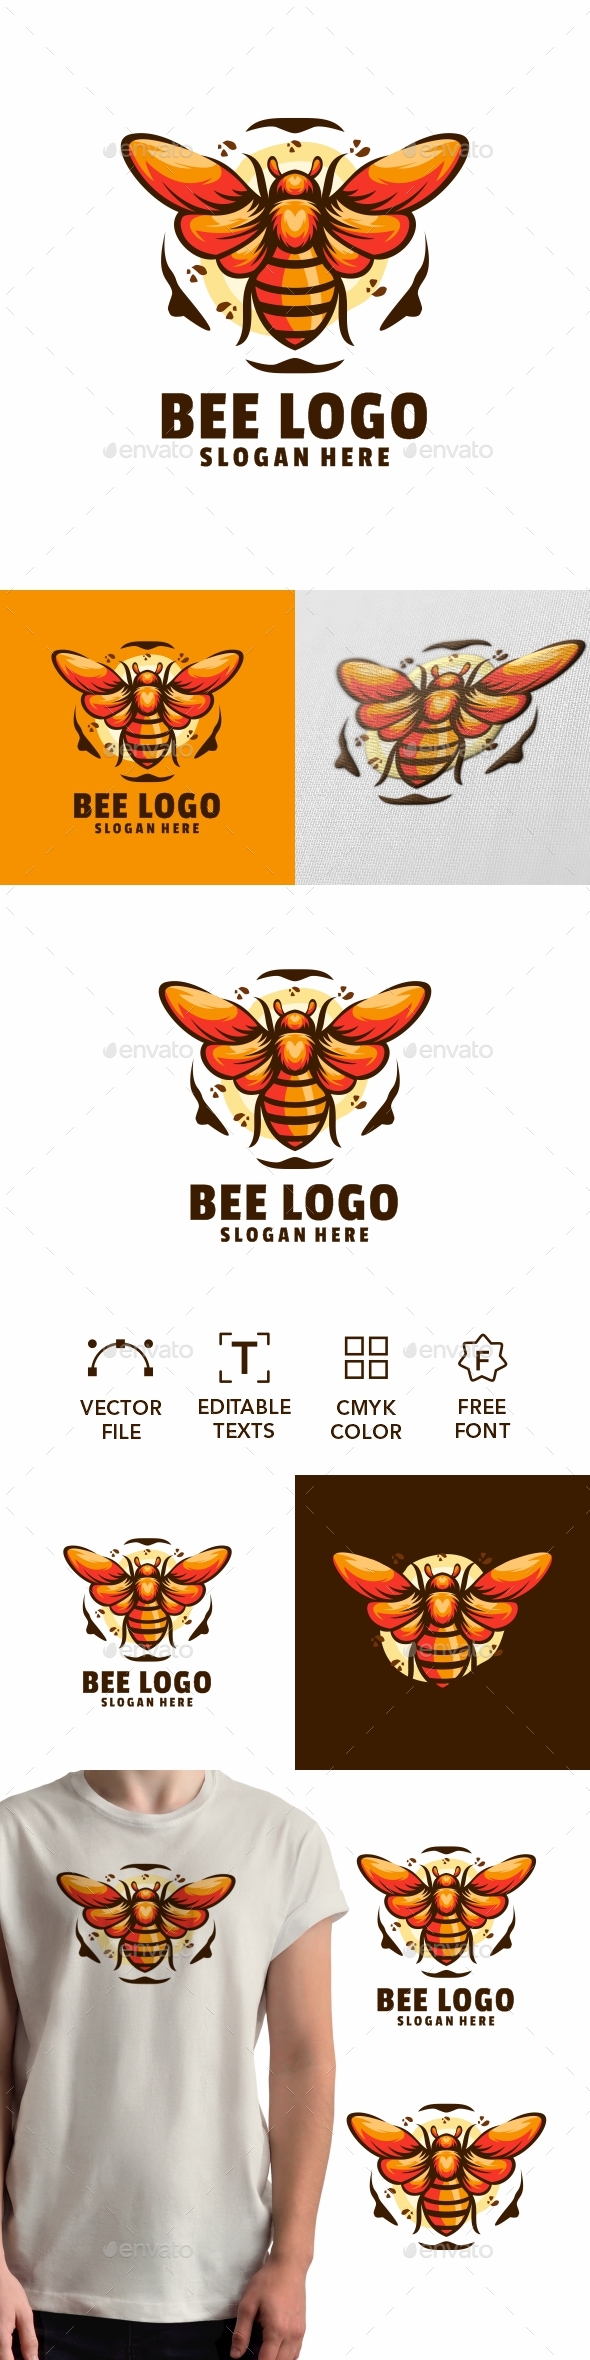 [DOWNLOAD]bee logo design